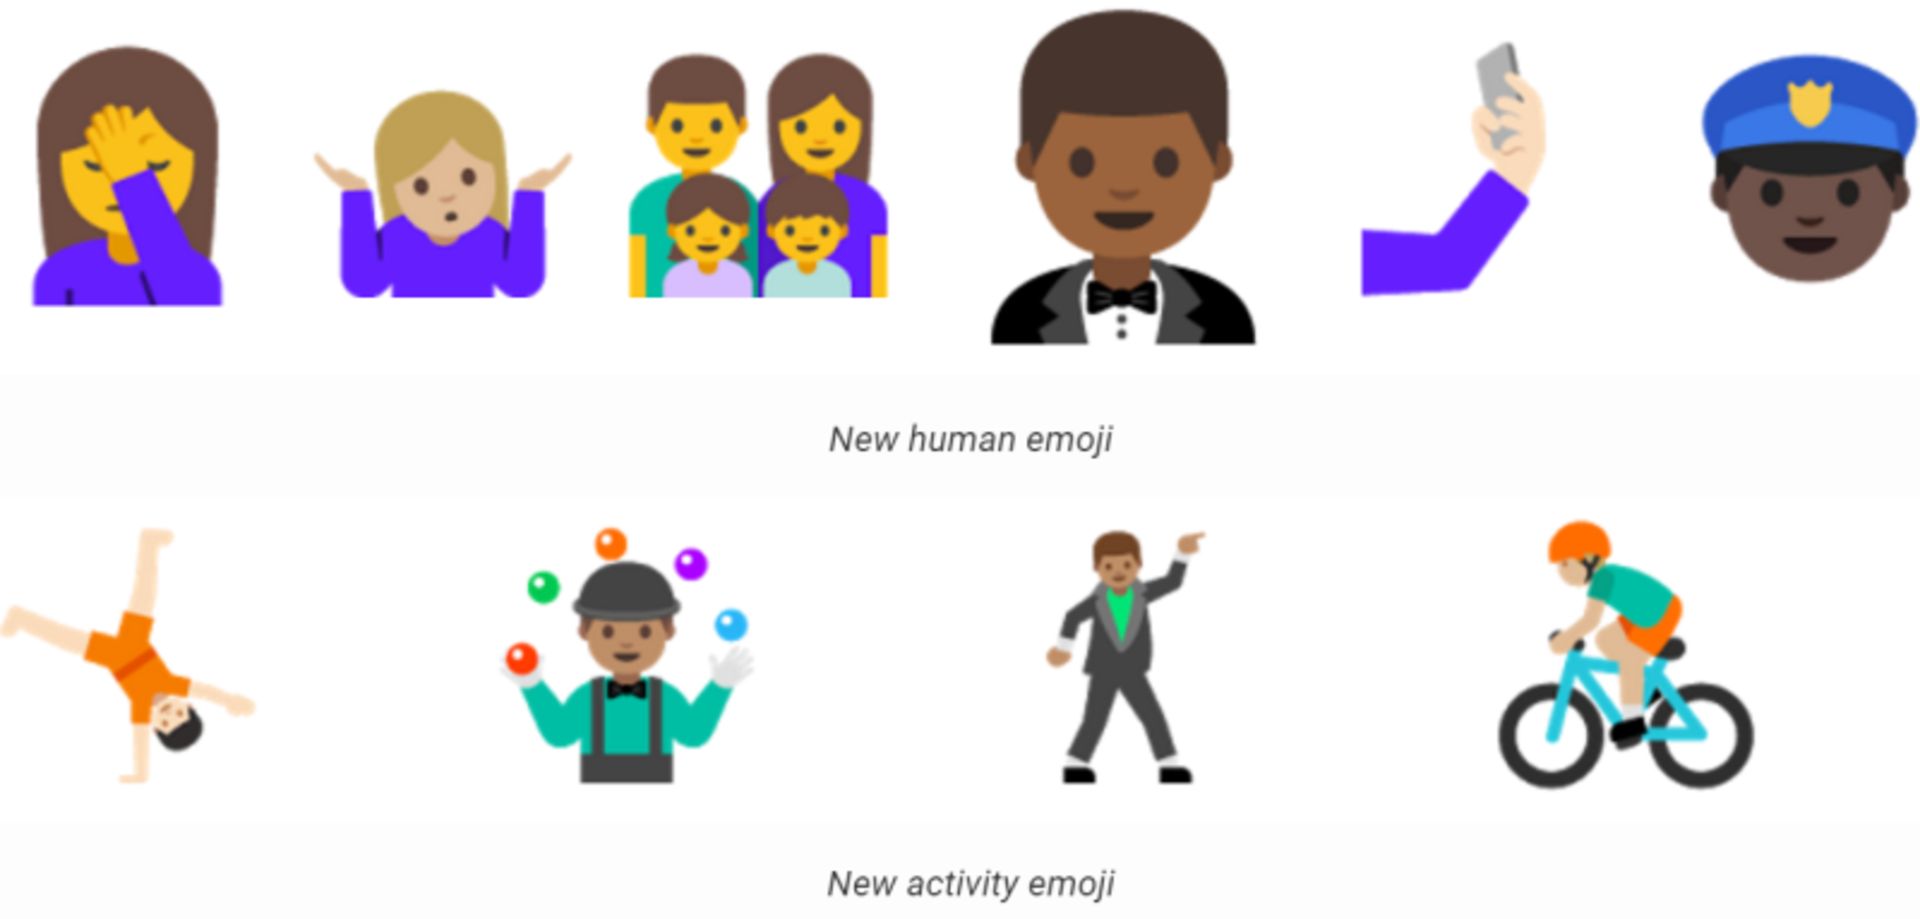 unicode 9 emoji